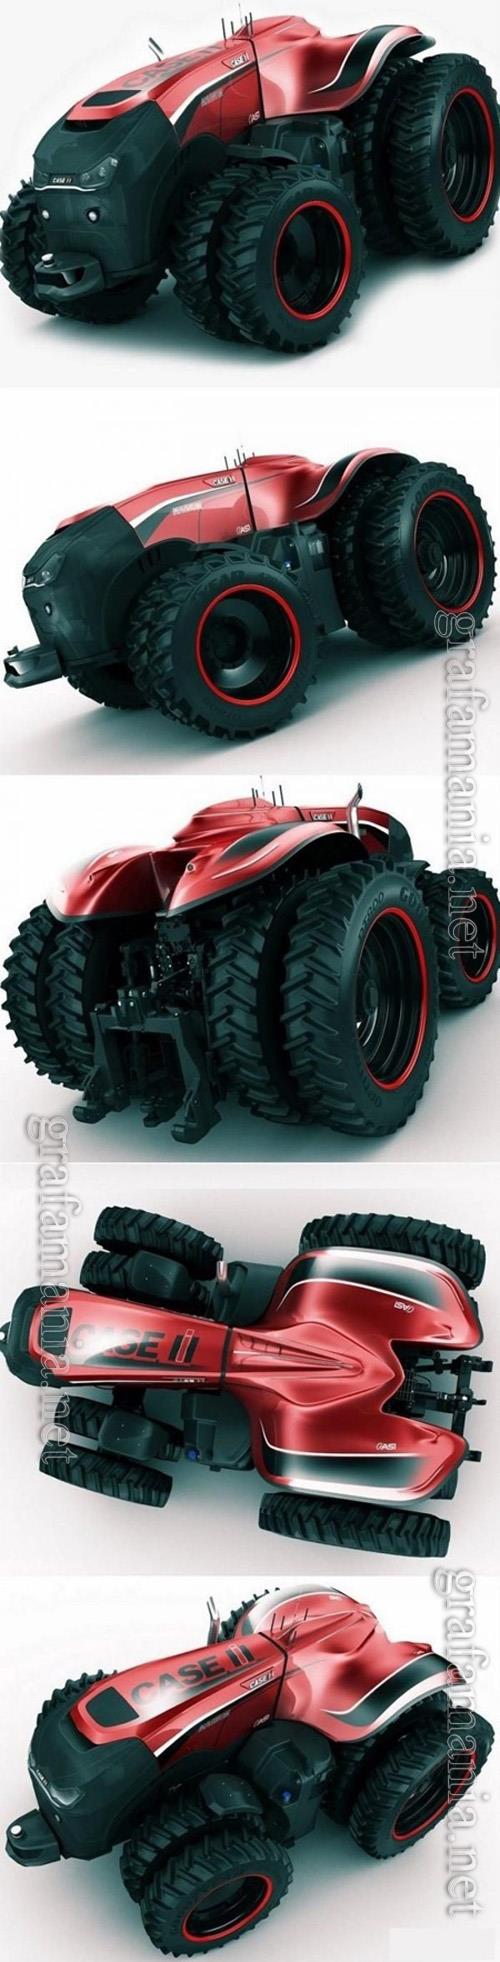 Case IH Autonomous Concept Tractor 3D Model